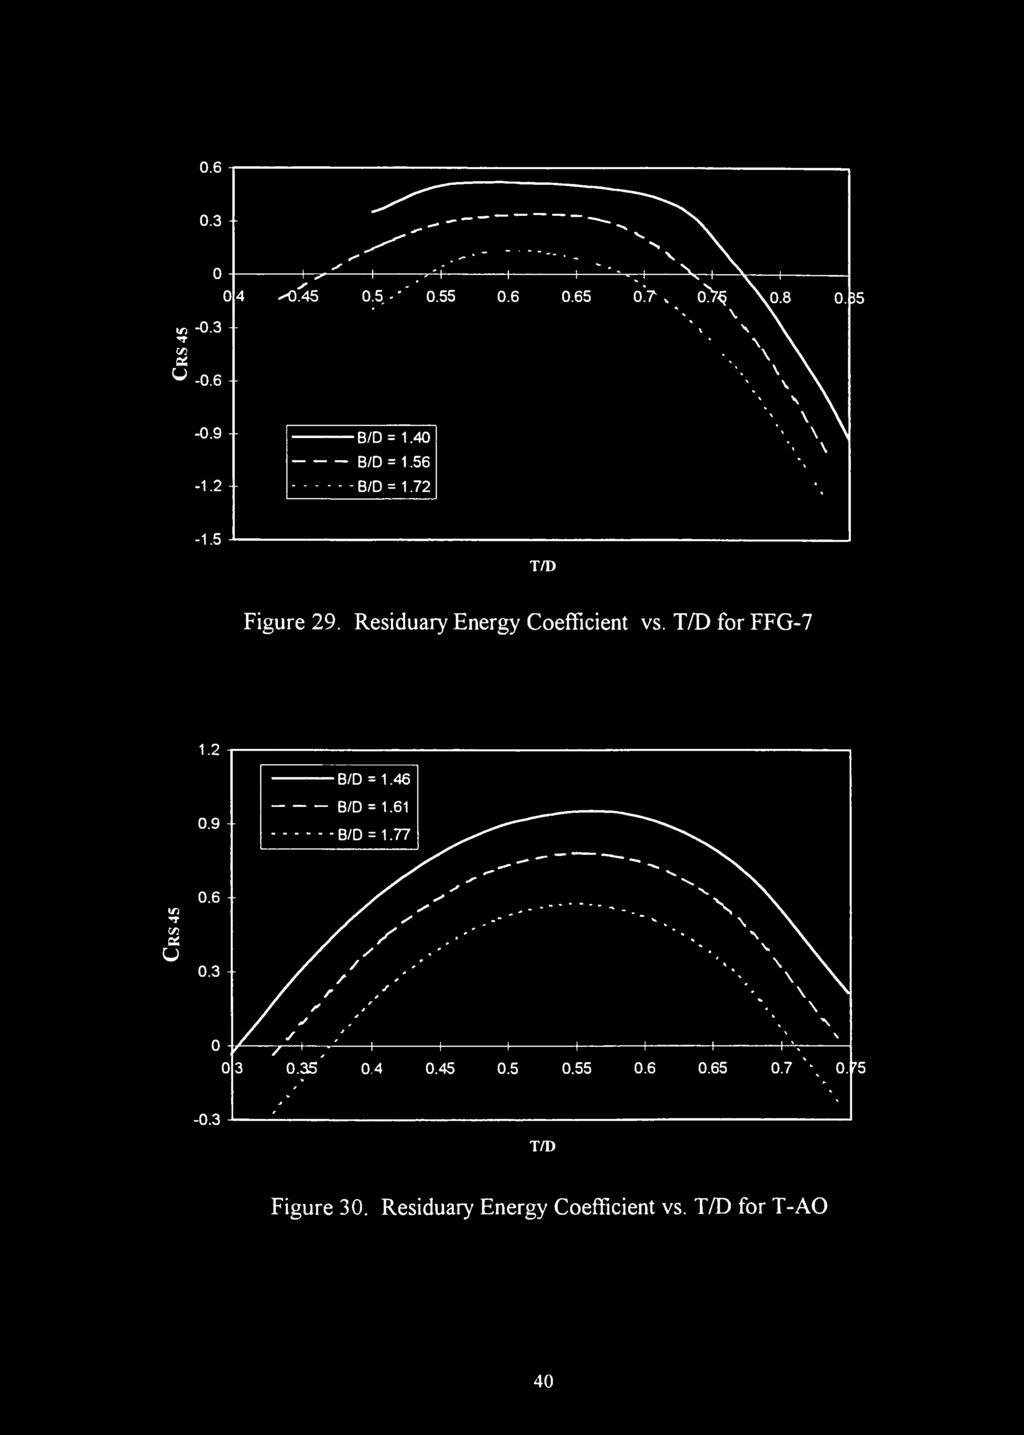 I 0.6 0.3 sqas ^-H 0.5-'' 0.55 0.6 0.65-0.3 </3 u 0.6-0.9 B/D = 1.40 B/D = 1.56-1.2 B/D = 1.72-1.5 T/D Figure 29.